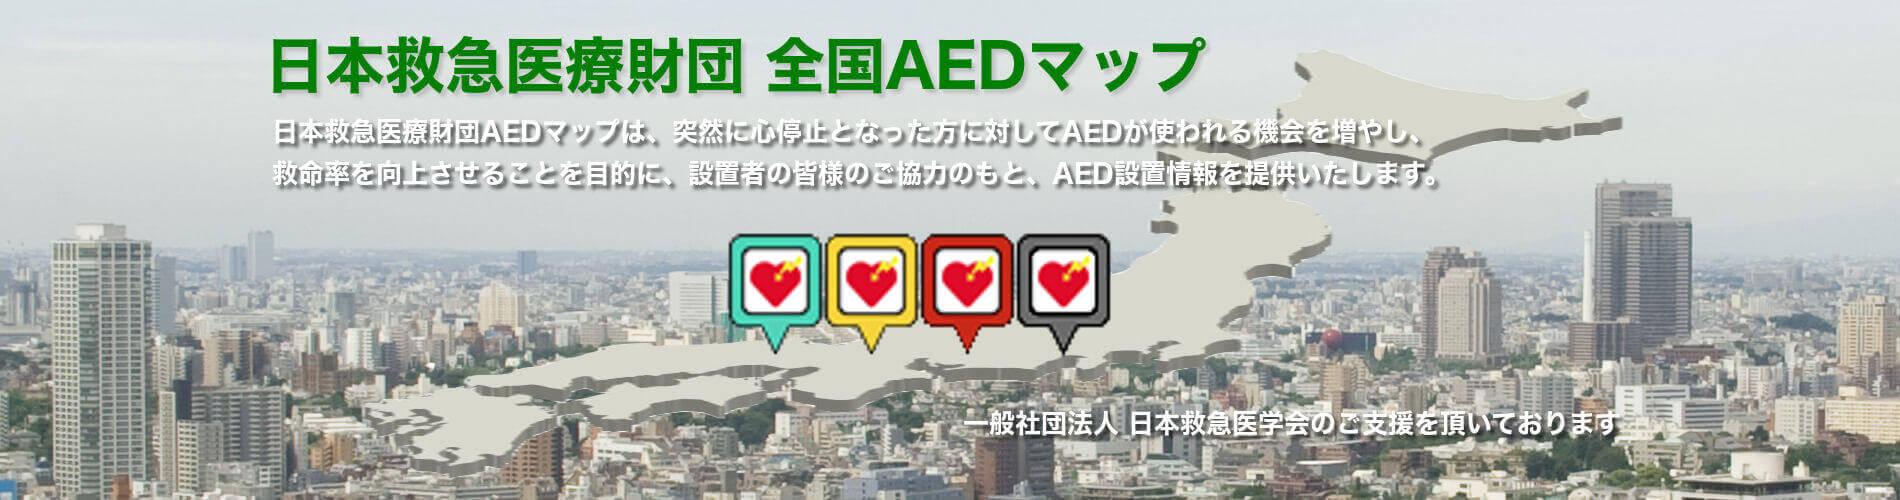 日本救急医療財団 全国AEDマップ